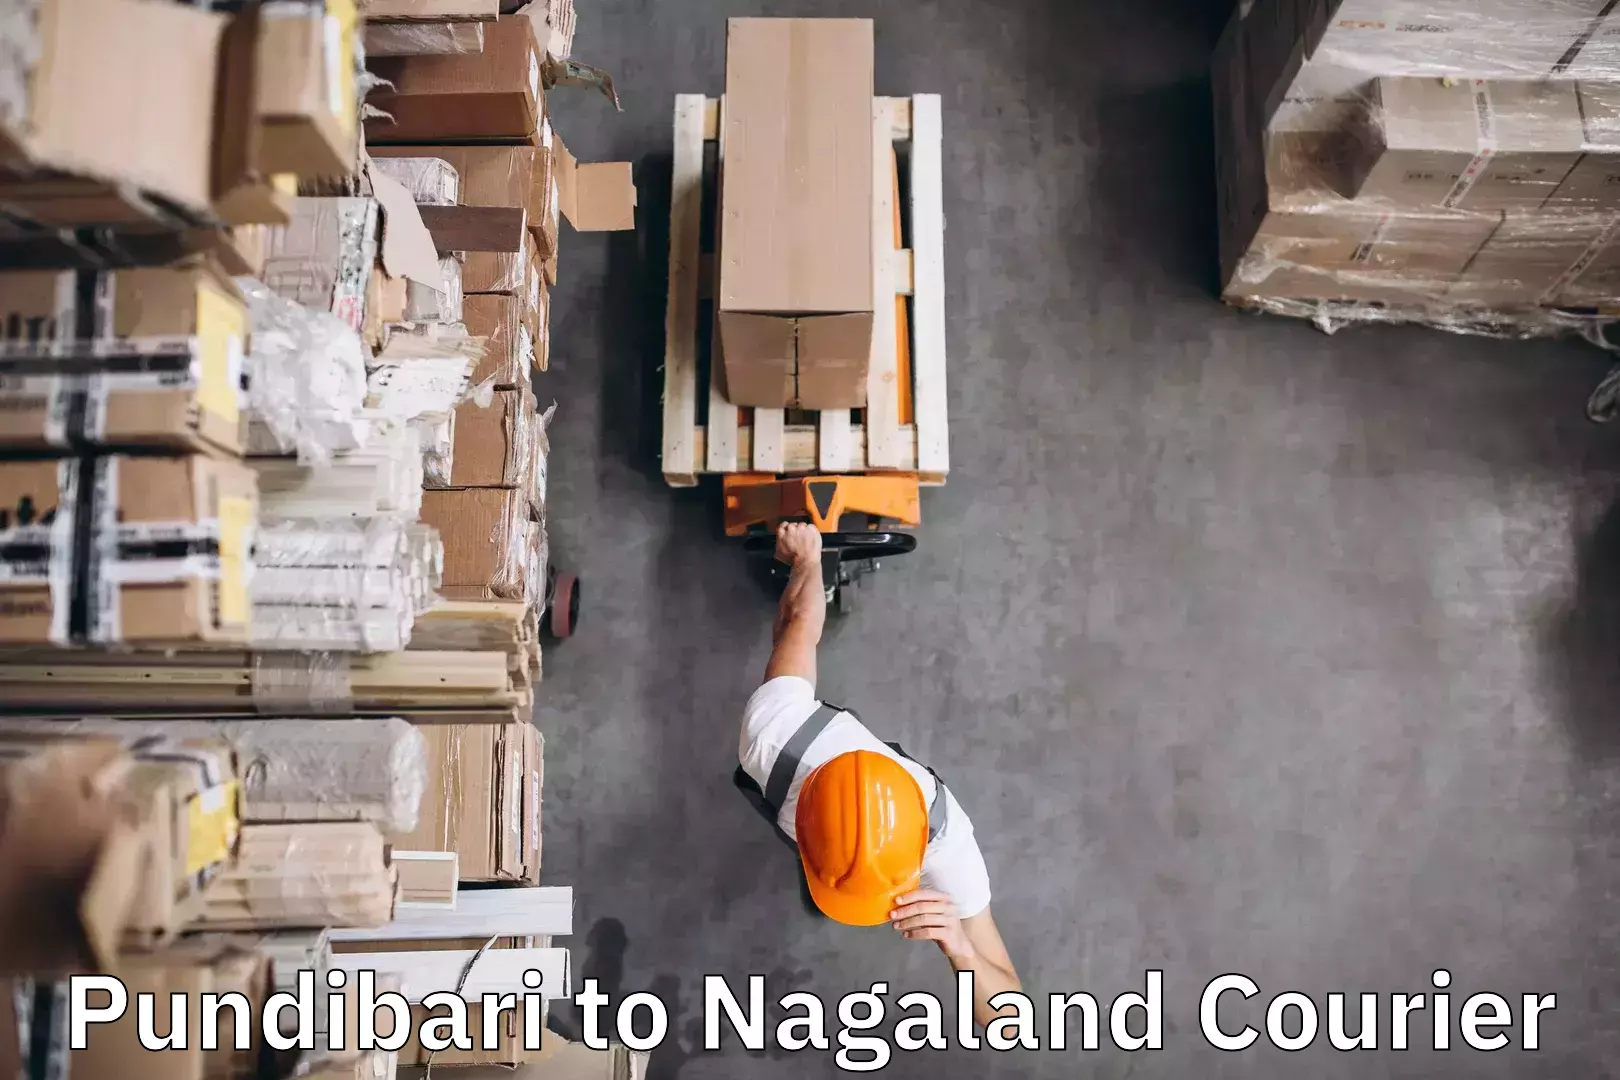 Baggage shipping experts Pundibari to Nagaland